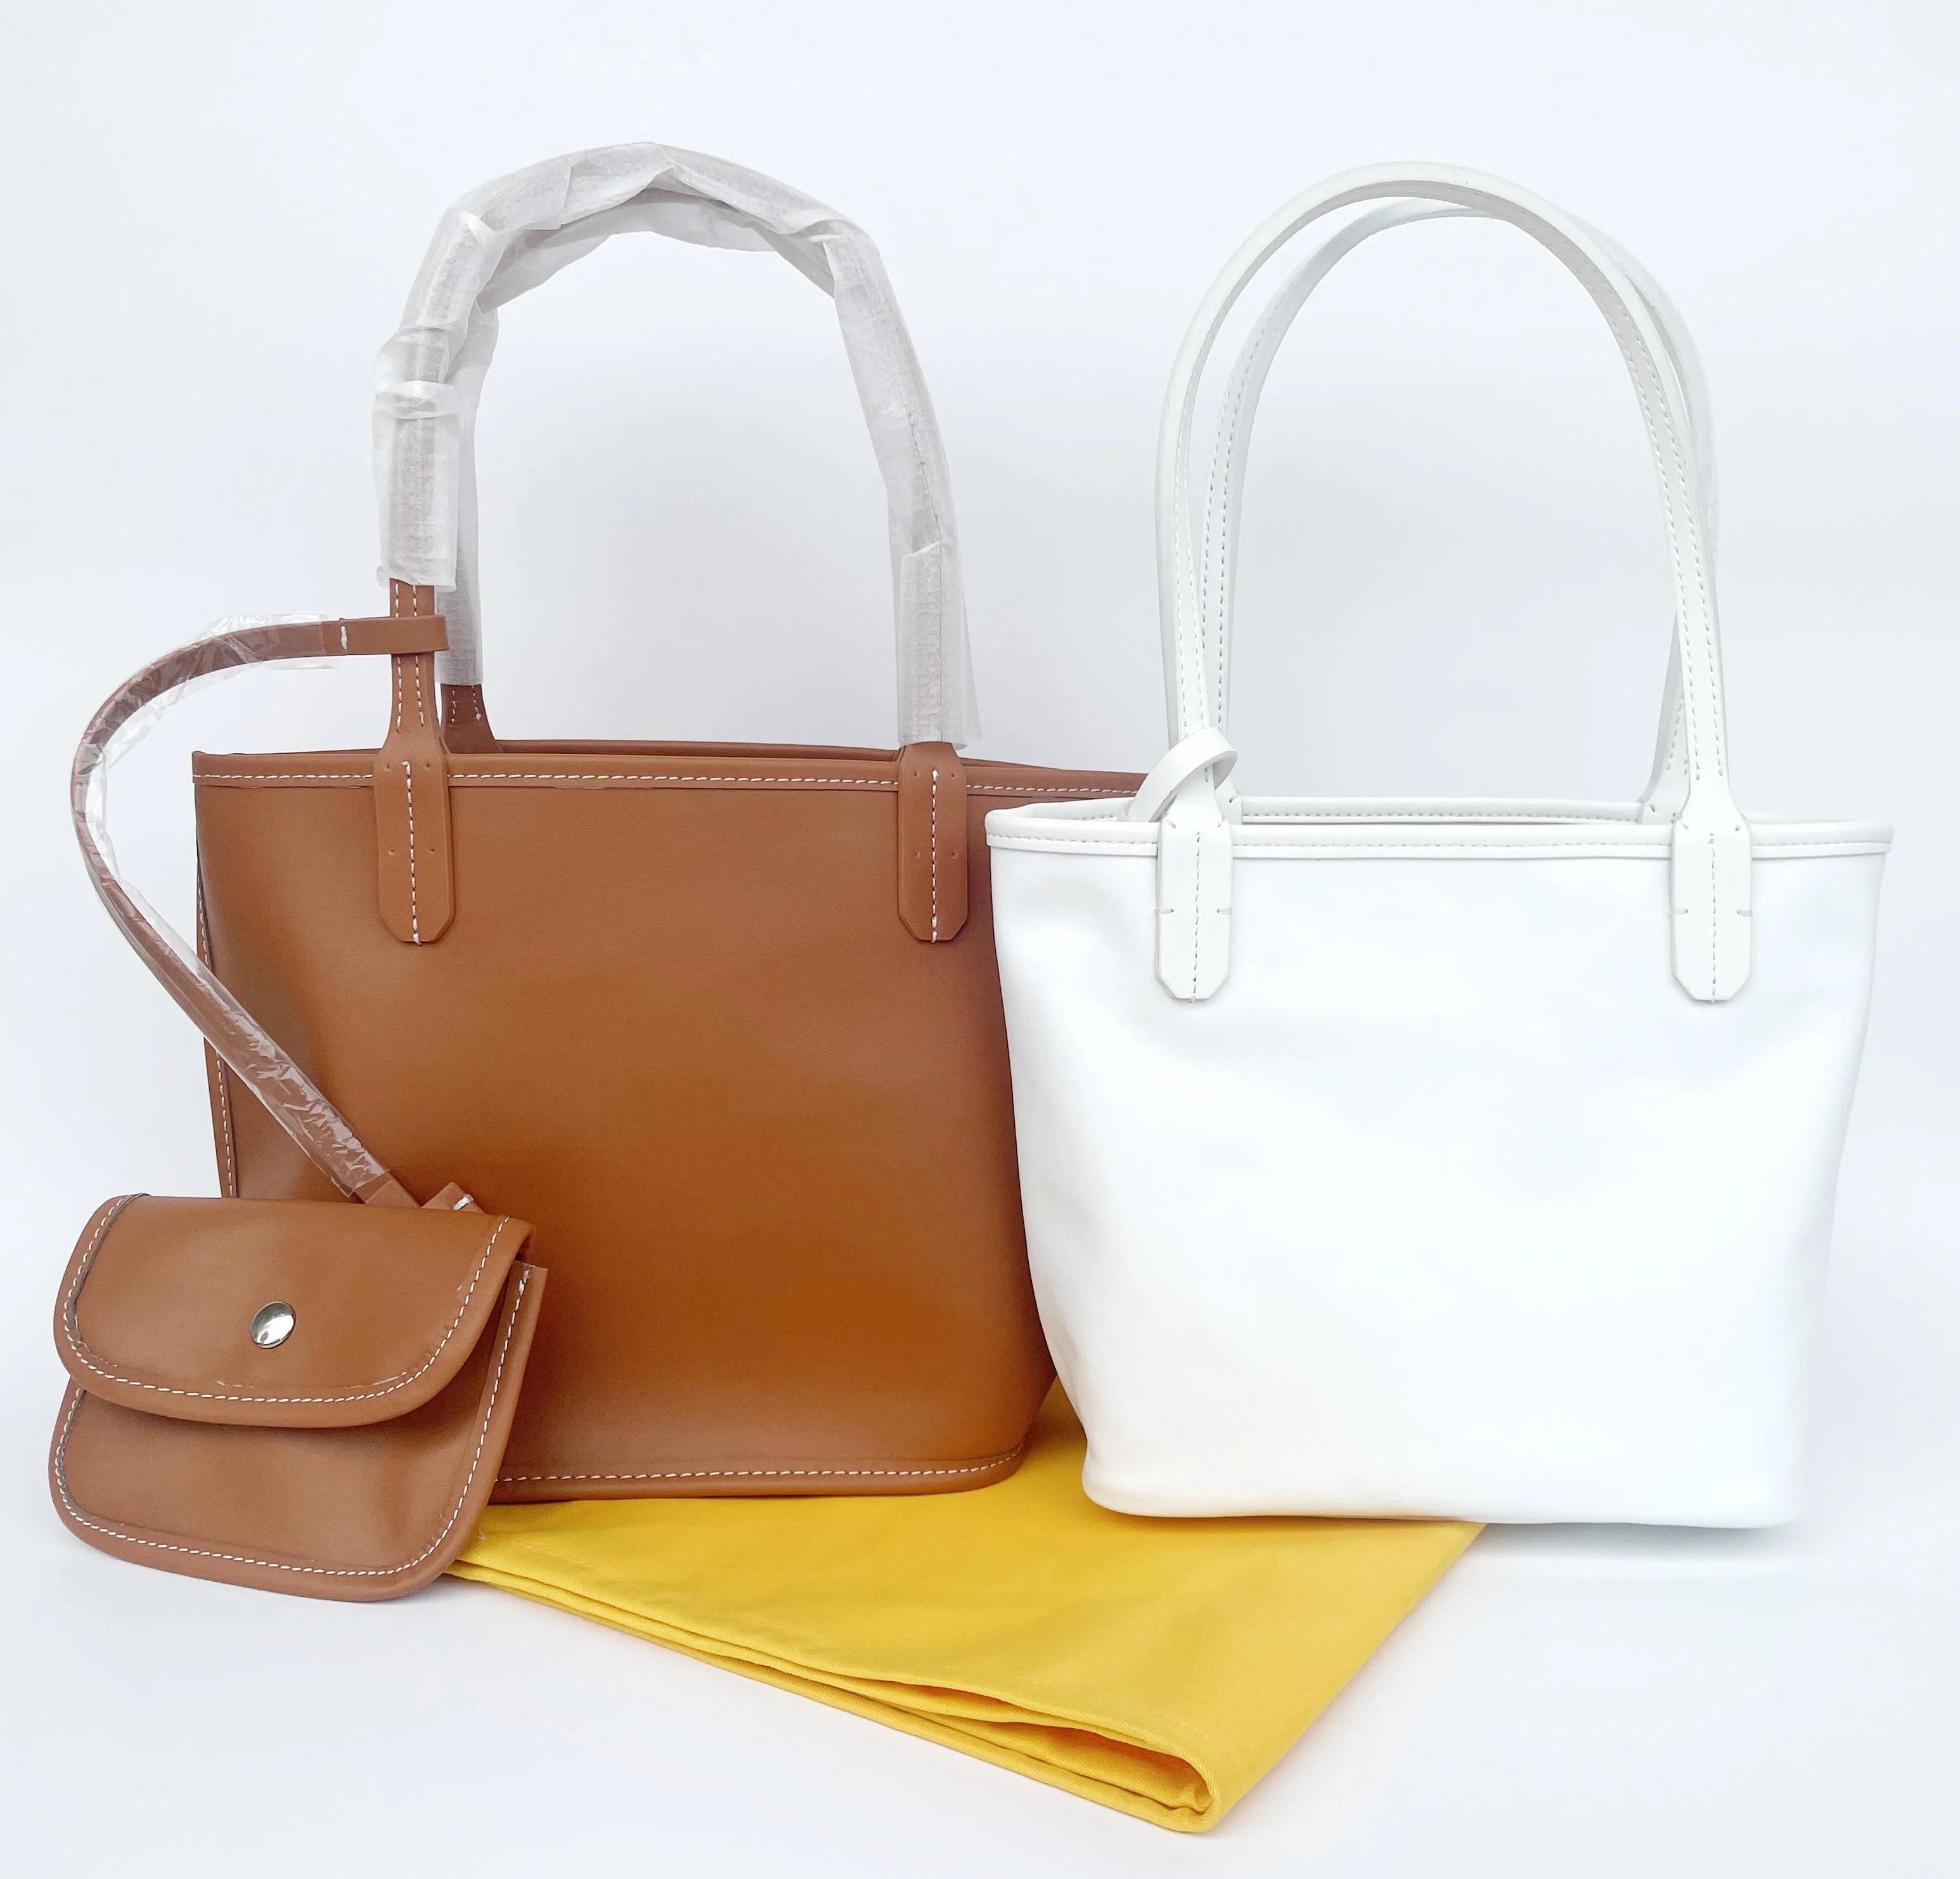 Einkaufstaschen für Damen, Umhängetasche, einseitig, echte Handtasche, kann die Individualisierung und Personalisierung erhöhen A1